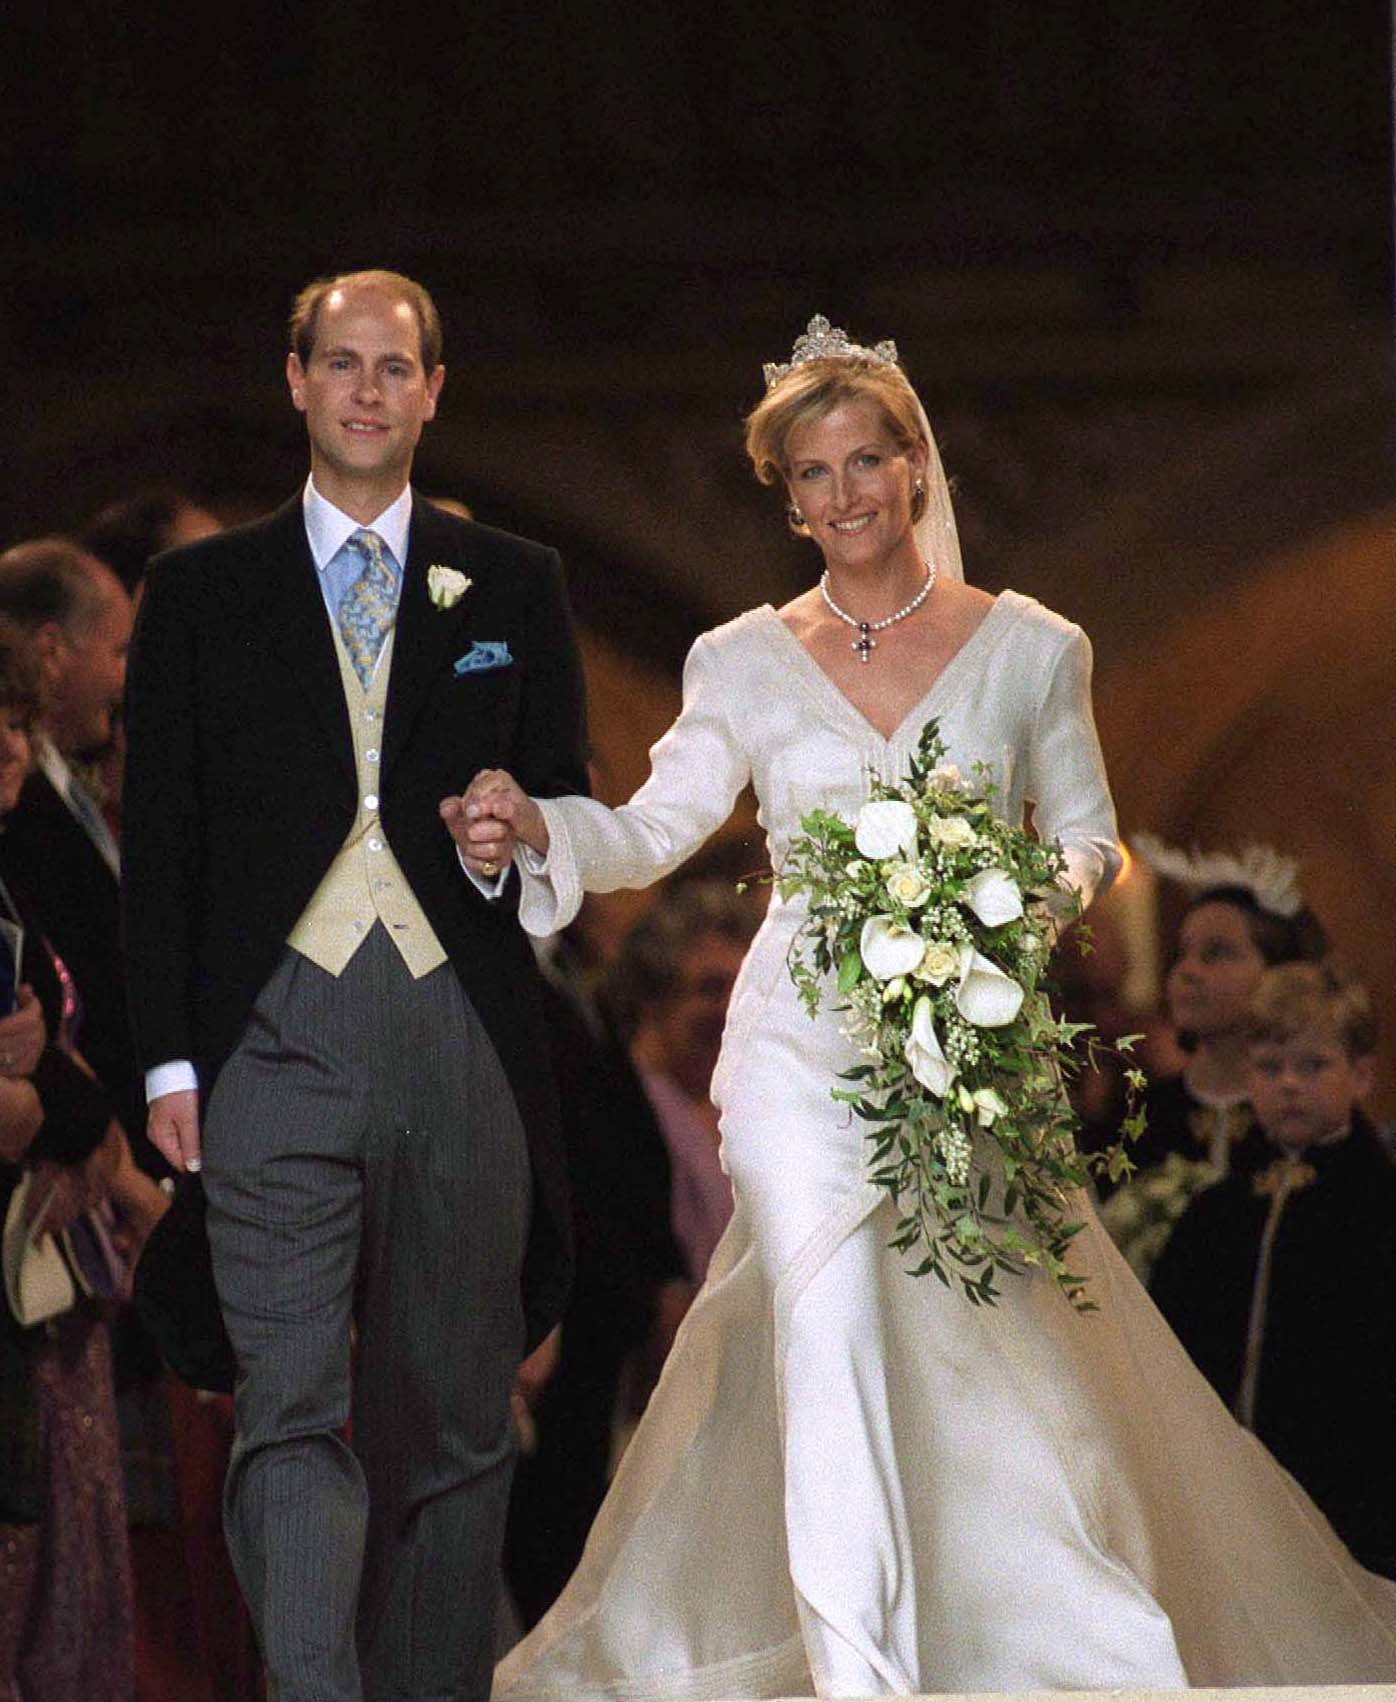 Le mariage du prince Edward et de Sophie Rhys-Jones à Windsor, au Royaume-Uni, le 19 juin 1999 | Source : Getty Images